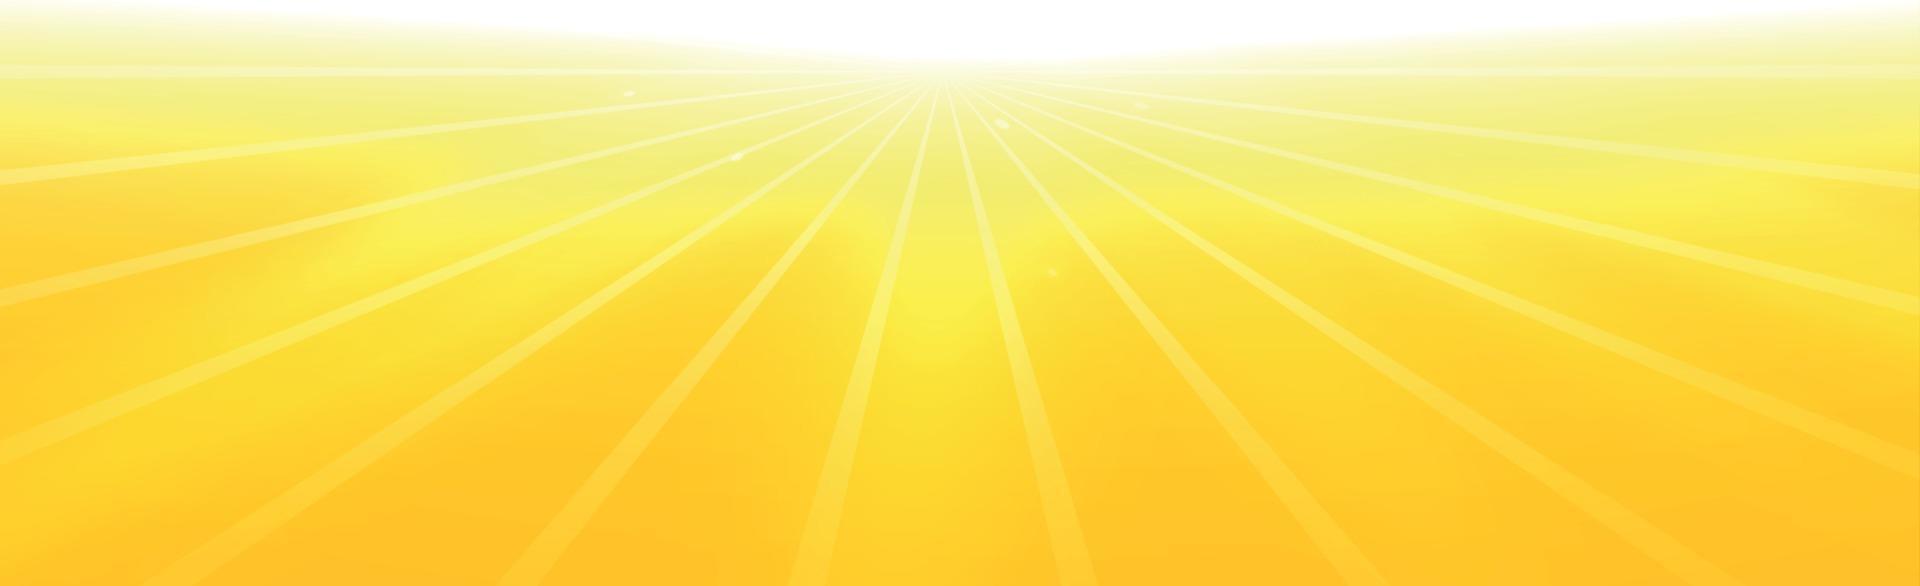 sol brilhante em um fundo amarelo-laranja - ilustração vetor